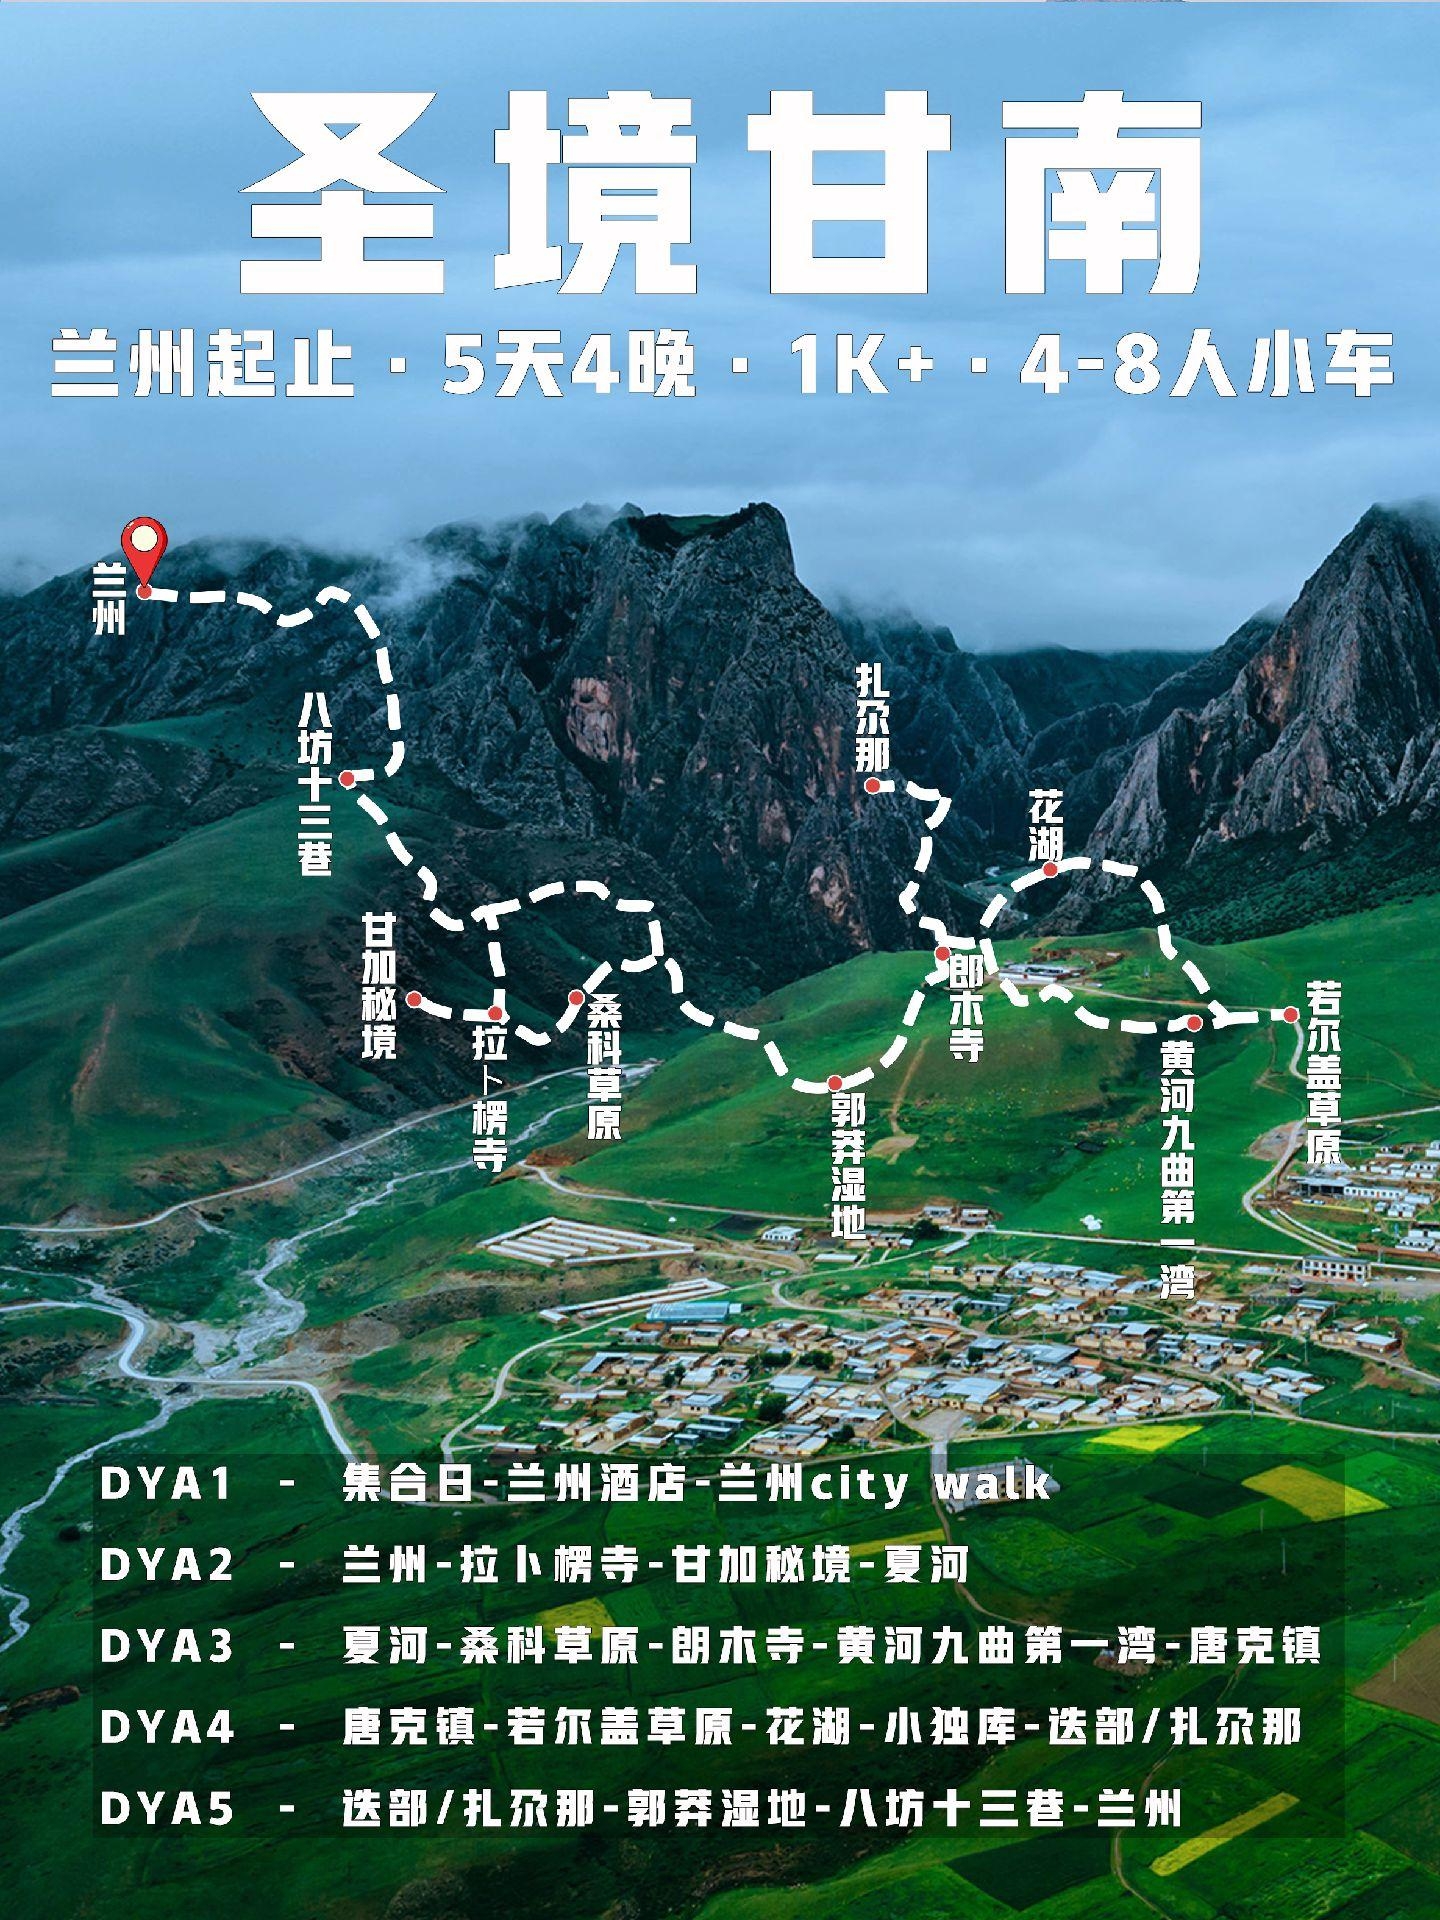 5天1K+📍甘加秘境玩转低海拔小西藏✅。🌟探索圣境甘南，领略甘南的天然盛景、小众秘境、地质奇观、风俗